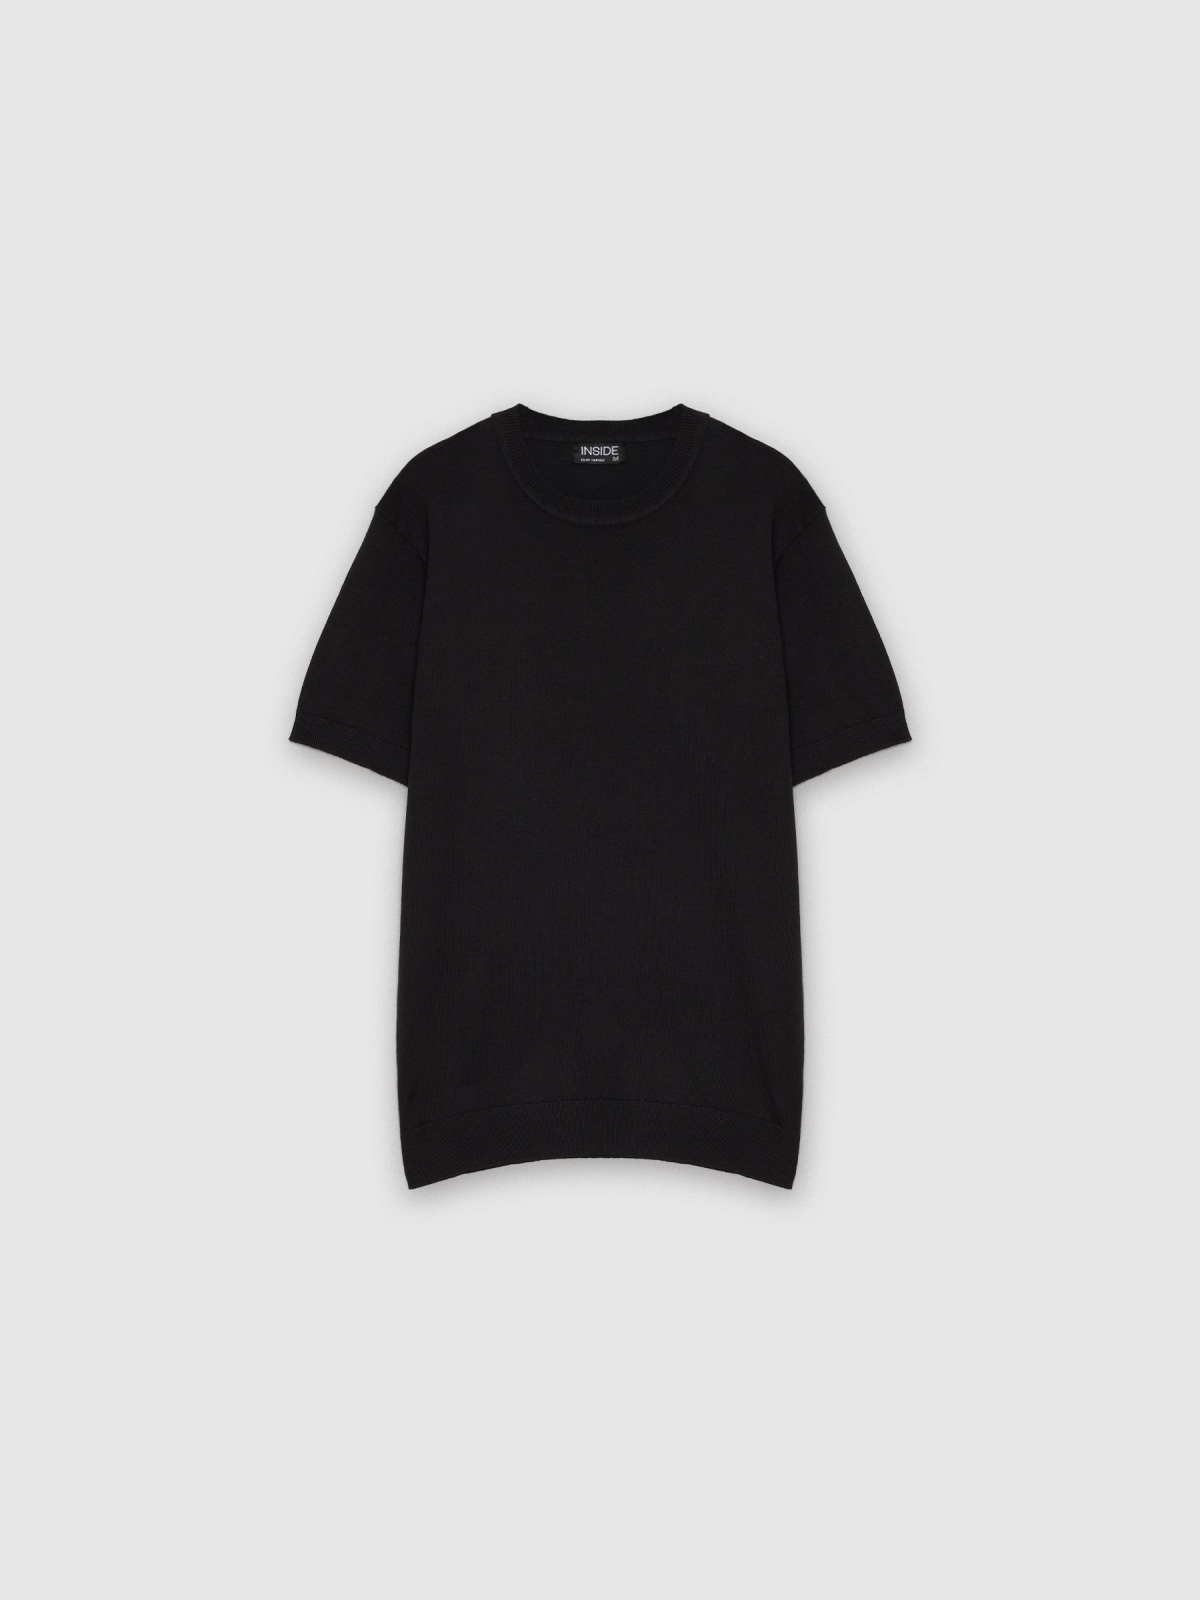  T-shirt tricotada básica preto